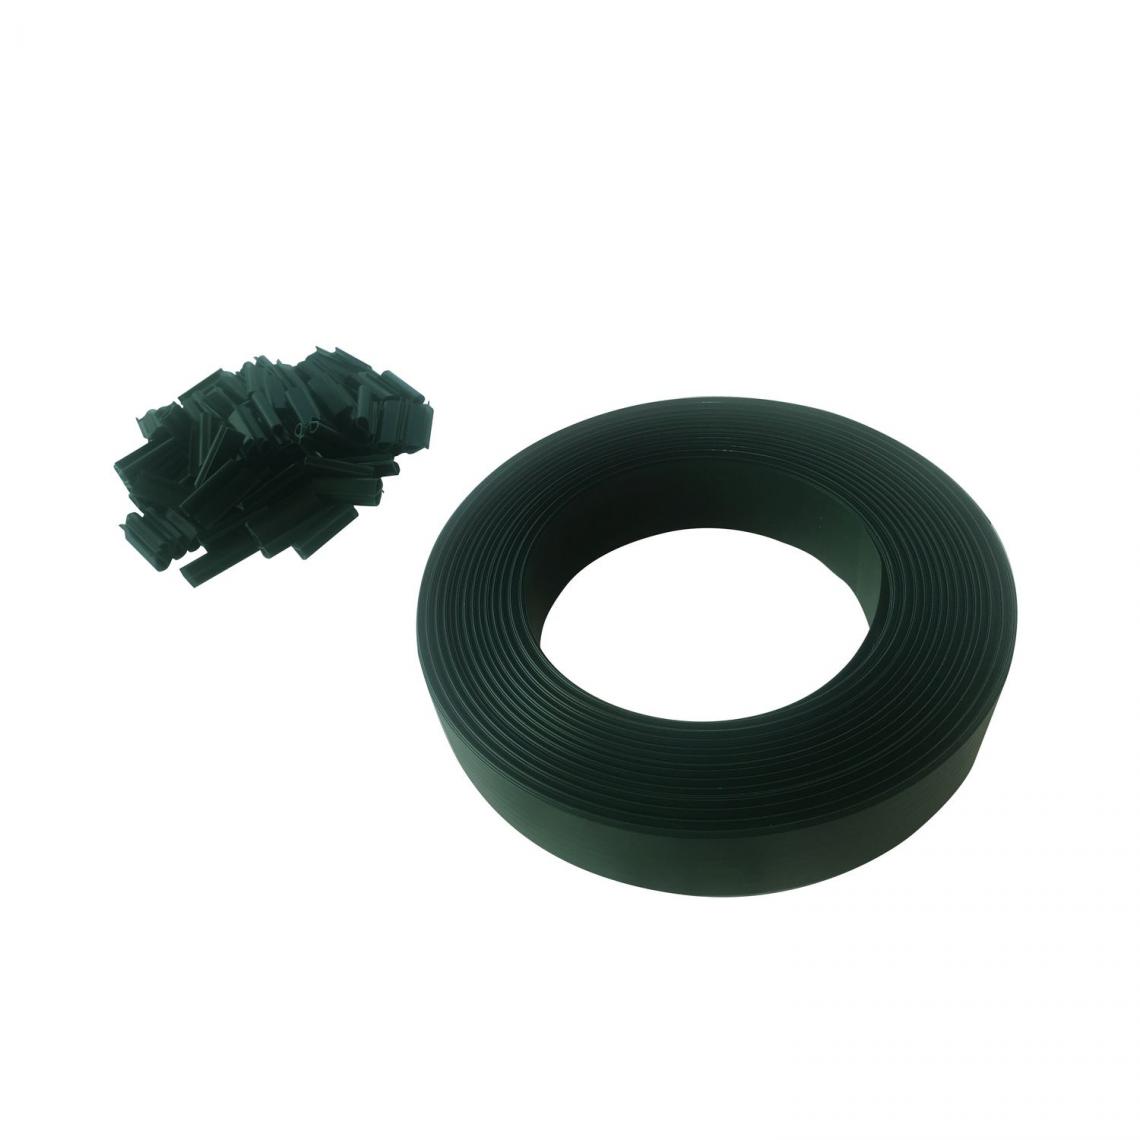 Toilinux - Kit de lamelle occultante PVC avec clip de fixation de 50 m pour grillage rigides - Vert - Claustras